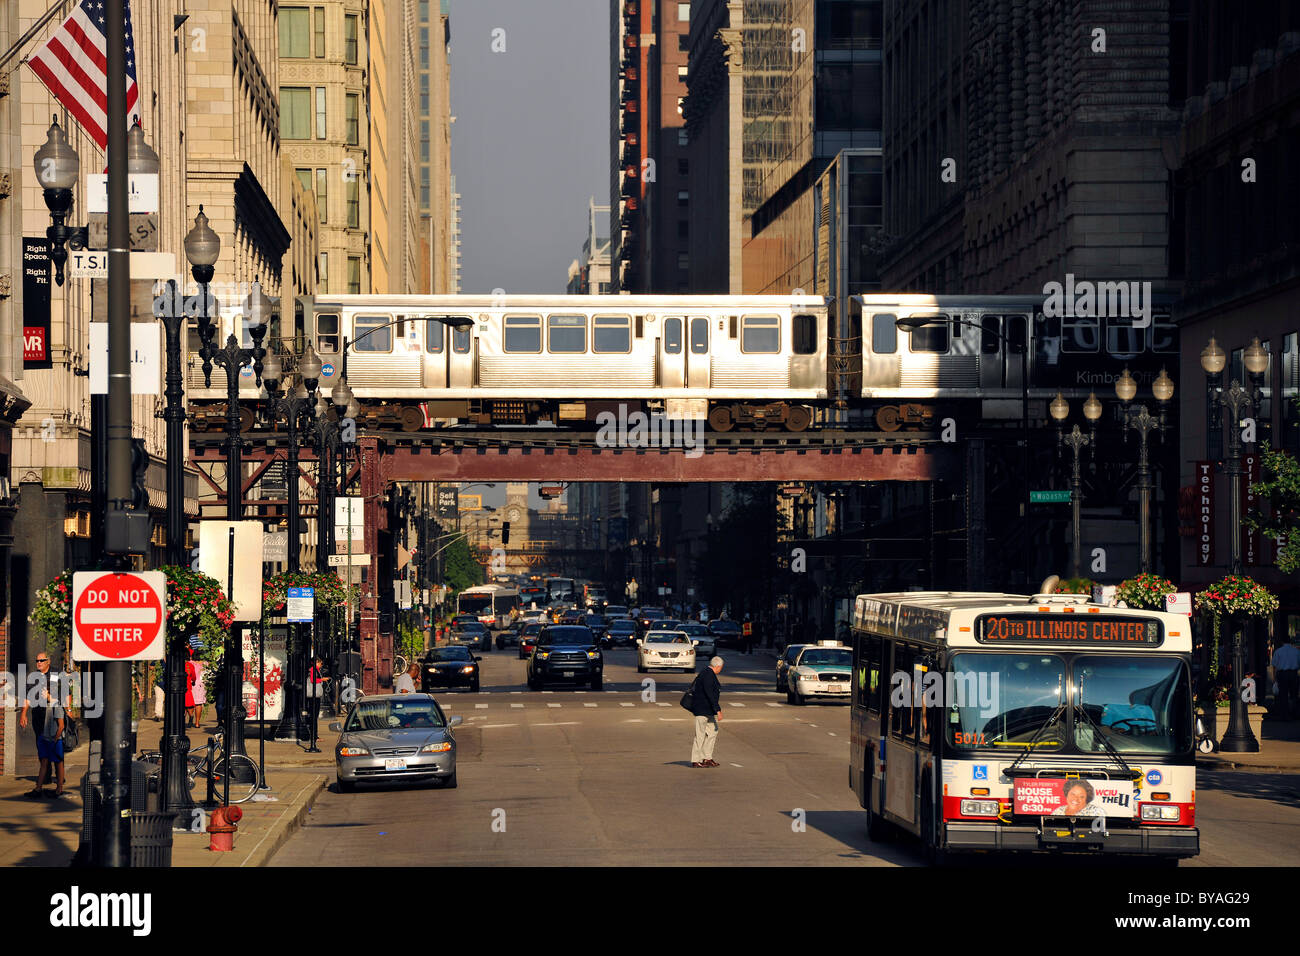 Erhöhten Zug Lin in Chicago, und El, L, CTA, bus, Taxi, Chicago, Illinois, Vereinigte Staaten von Amerika, USA Stockfoto